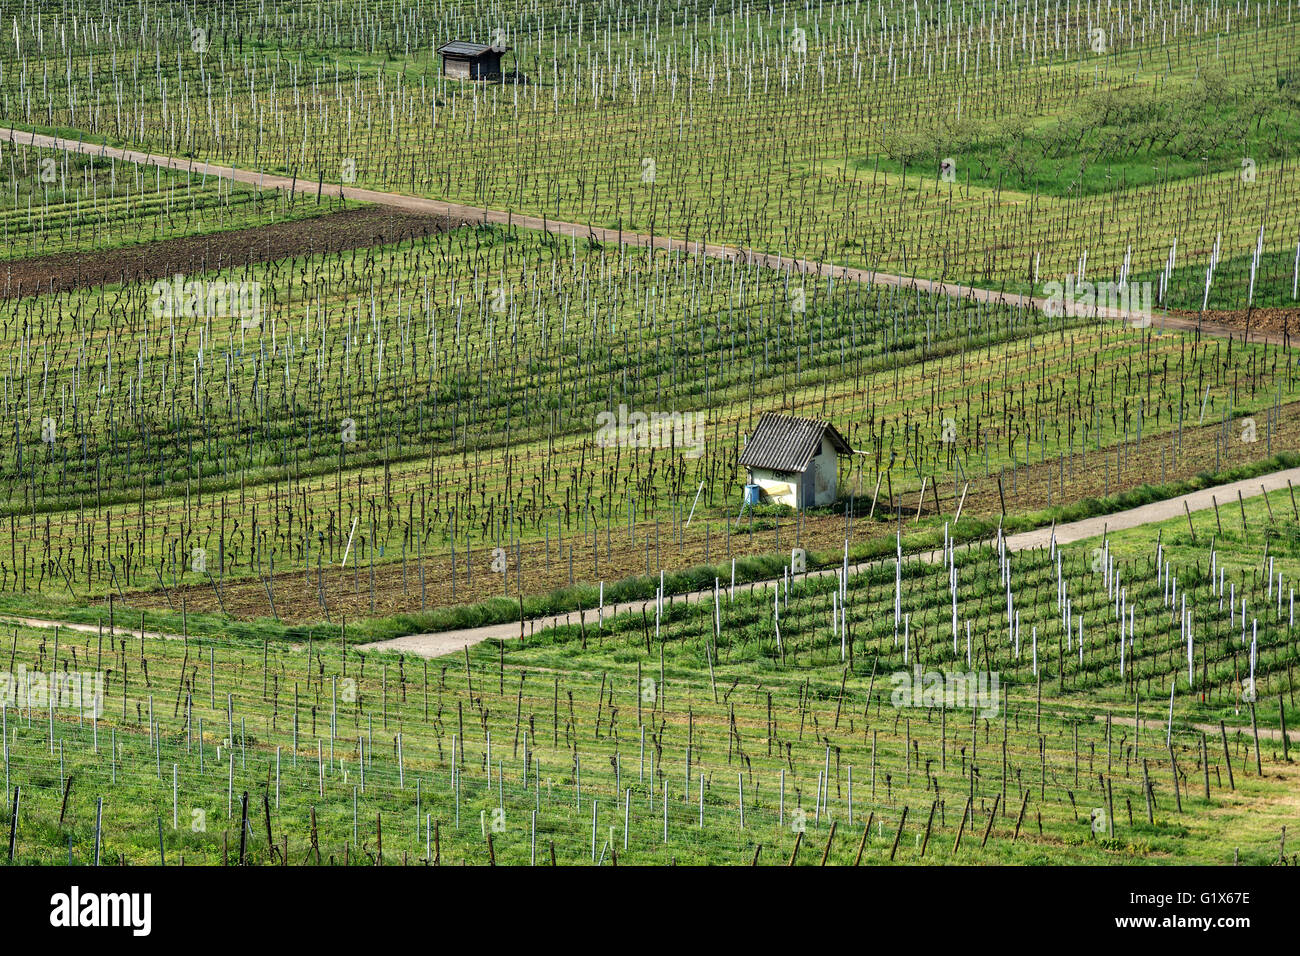 La viticulture, la vigne au printemps, Ladenburg, Bade-Wurtemberg, Allemagne Banque D'Images